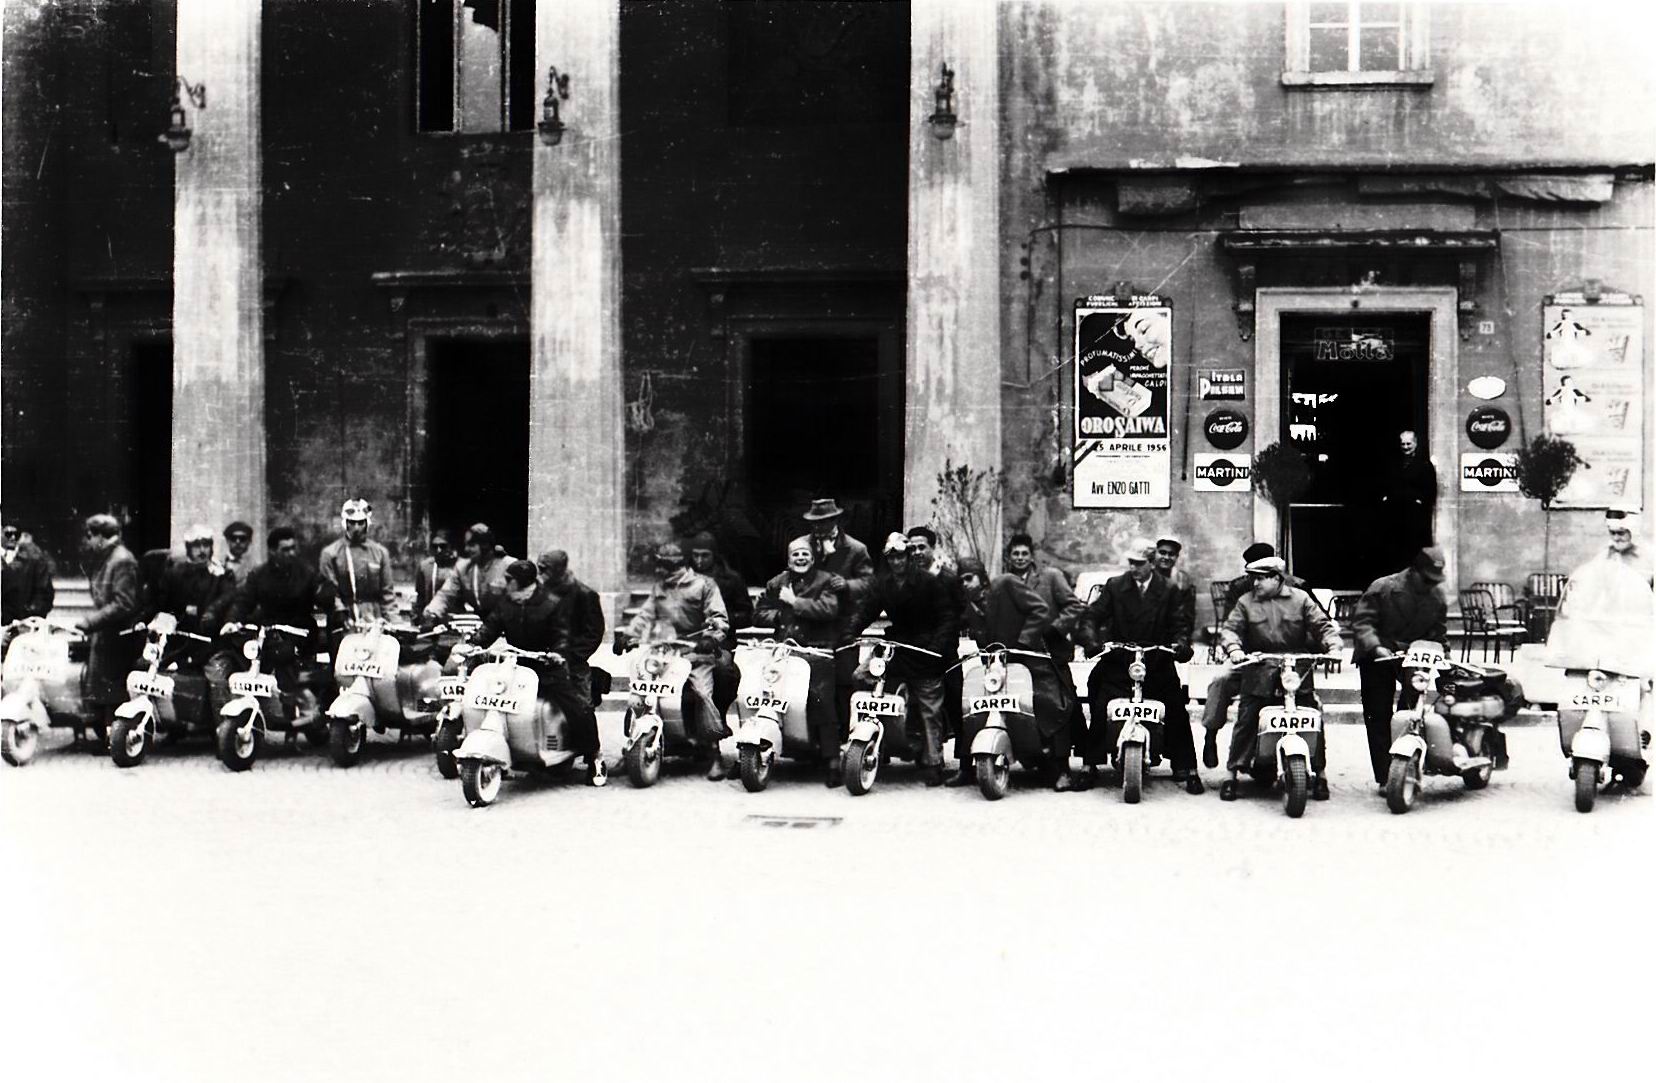 1956-raduno-lambretta-piazza-04-caffe-teatro